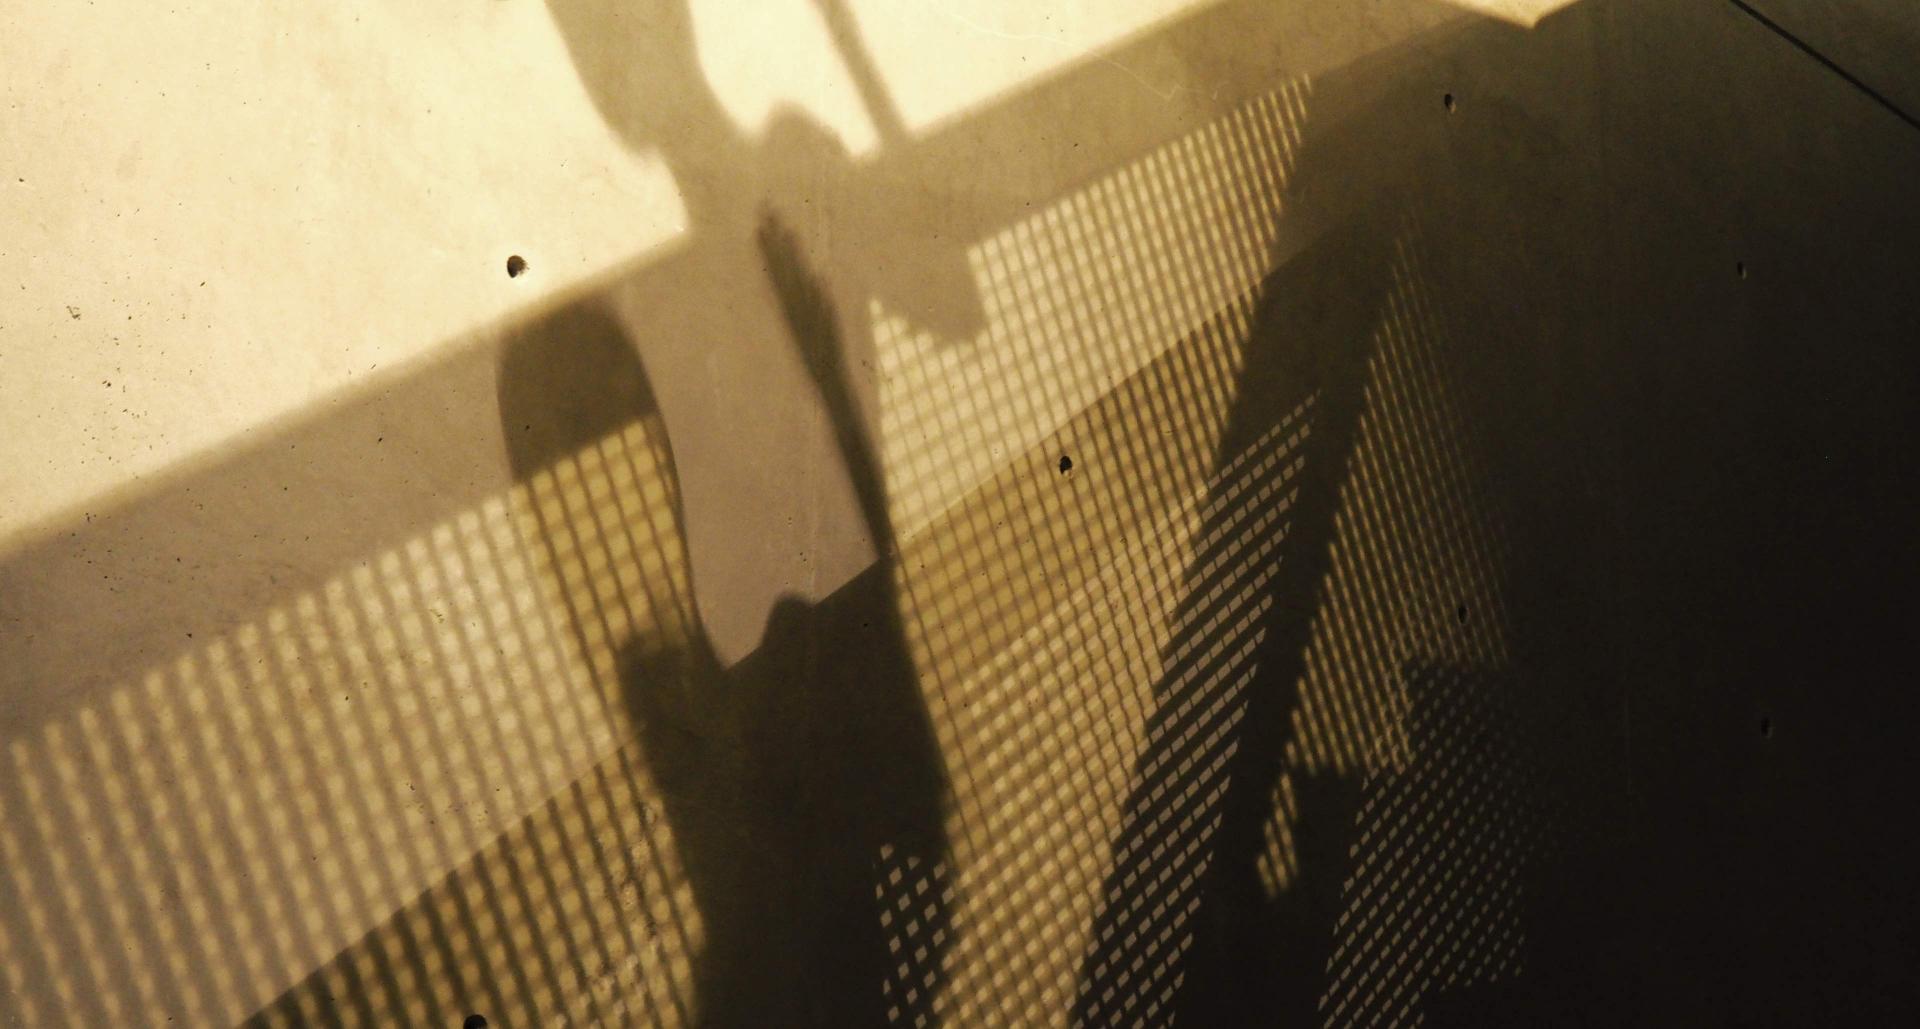 Der Schatten einer Person auf einer Wand.